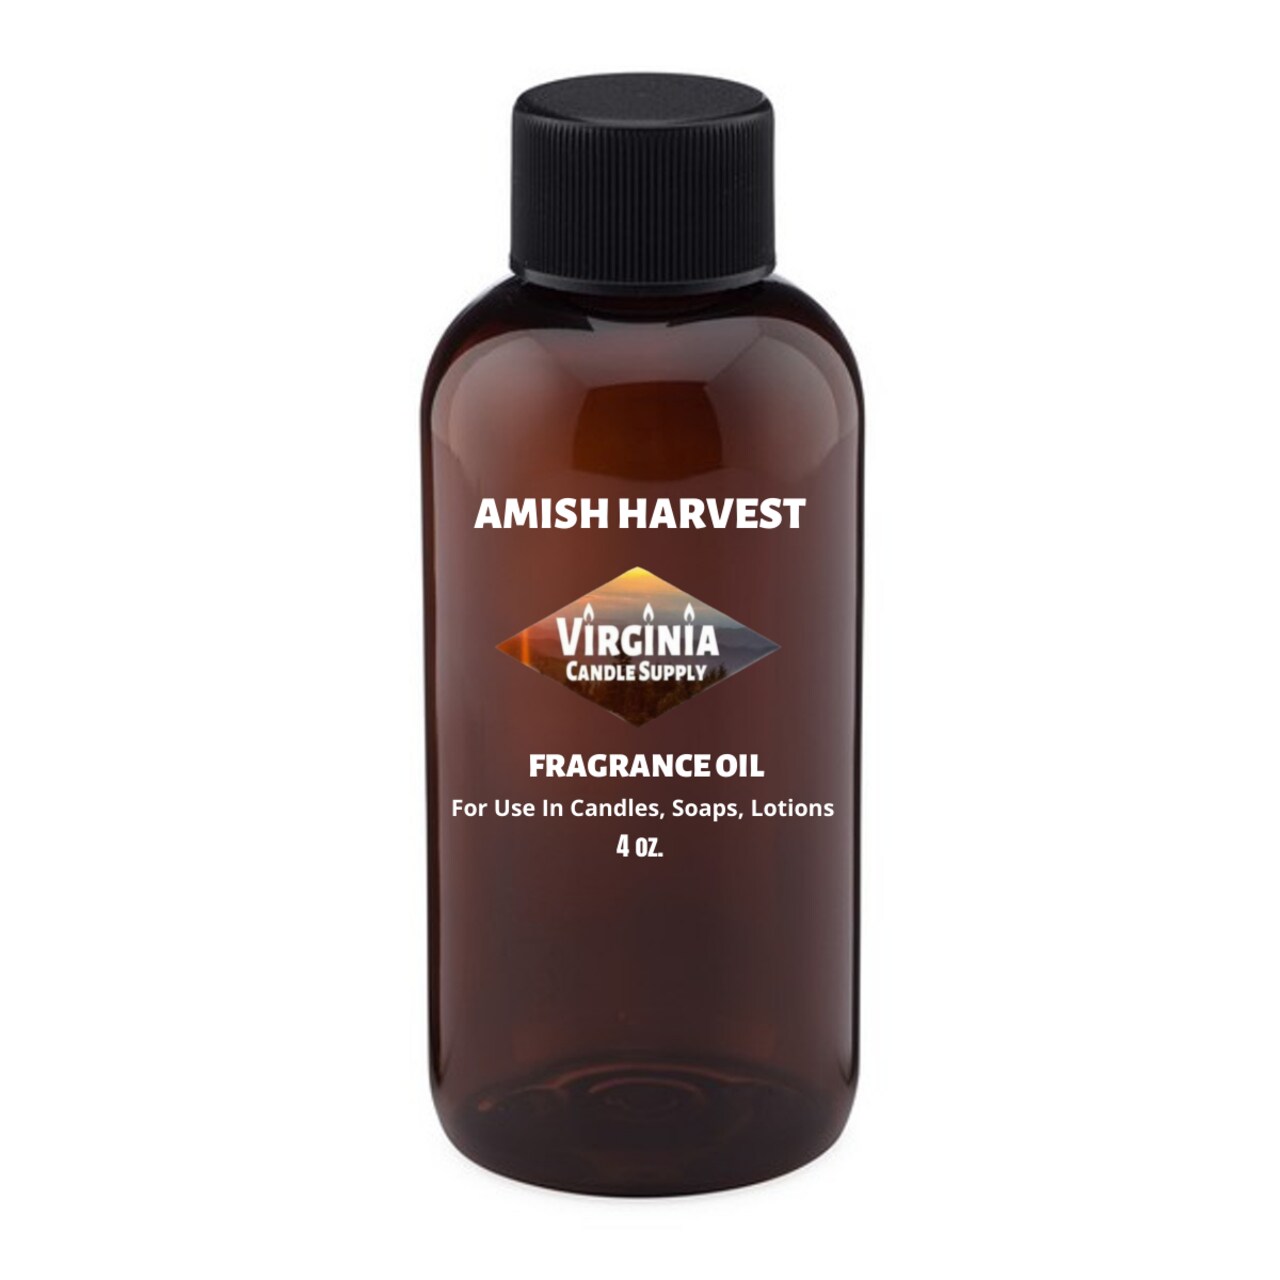 Amish Harvest Fragrance Oil (4 oz Bottle) for Candle Making, Soap